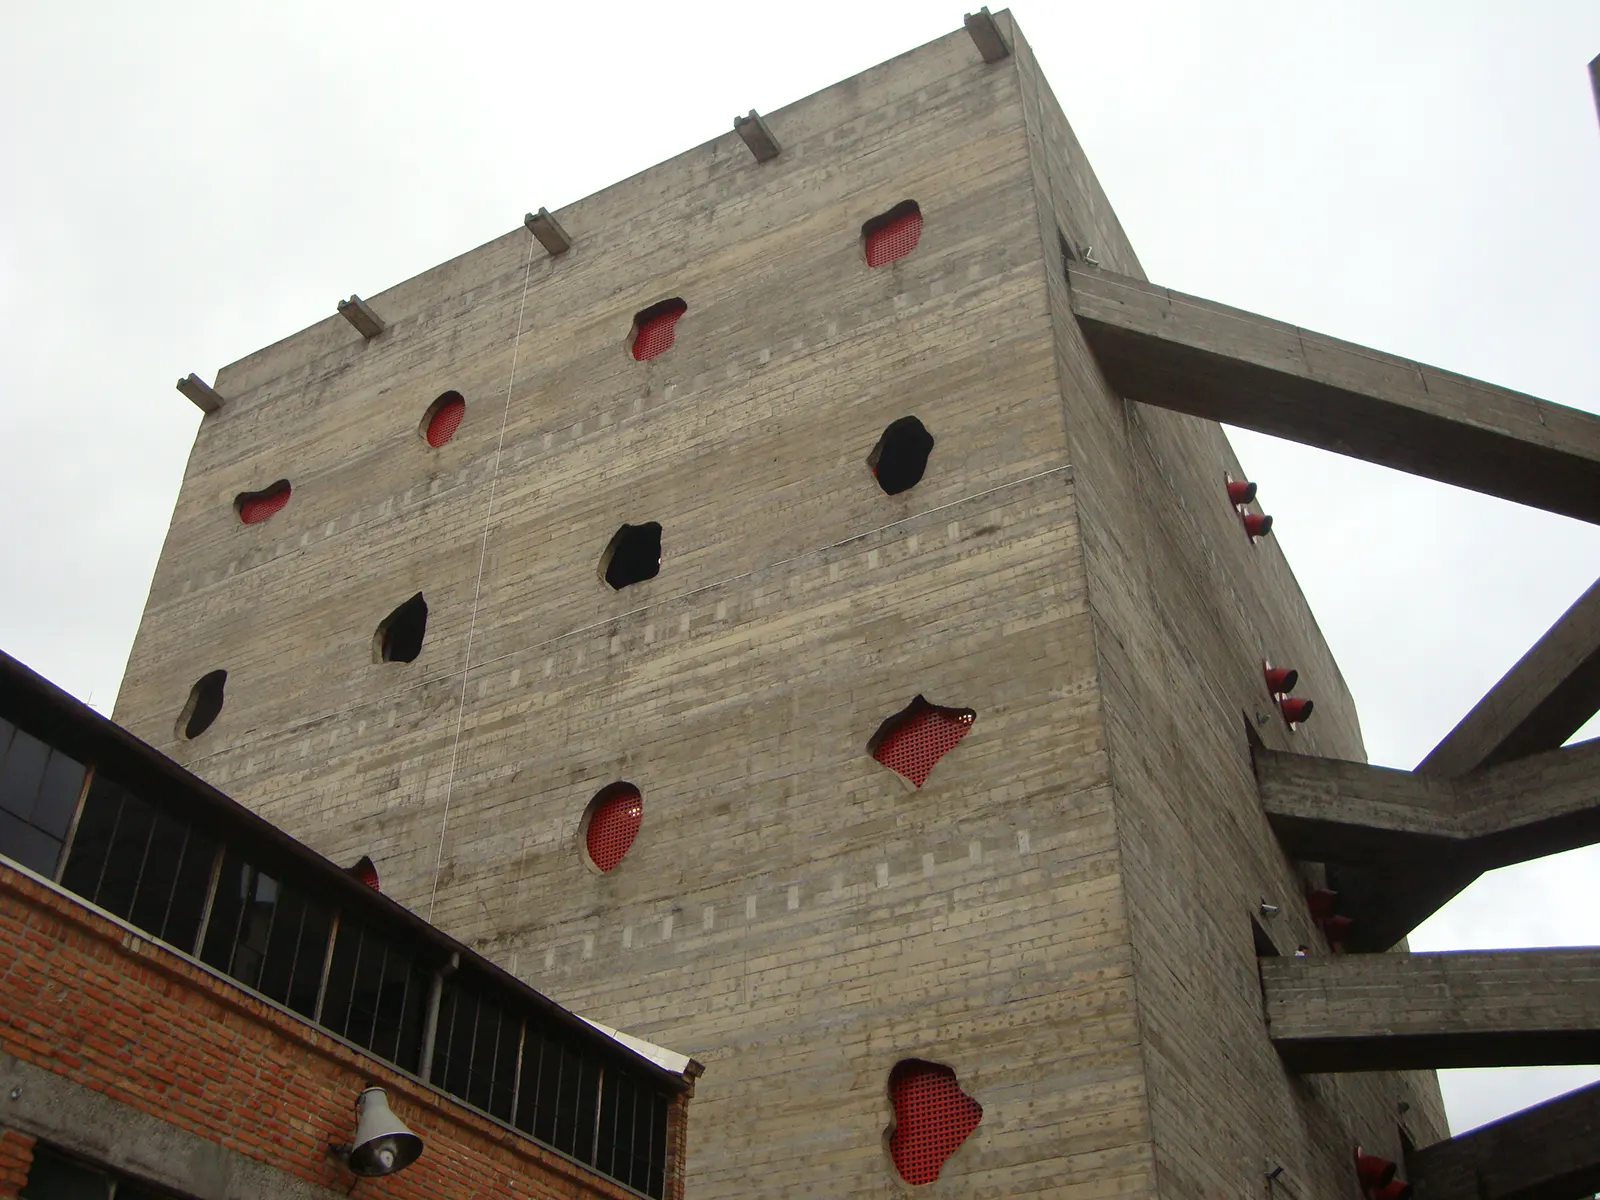 Nella seconda fase del lavoro, emergono le torri in cemento a vista con insolite aperture di ventilazione, che contrastano poeticamente con i magazzini preesistenti. 2010. Foto Cassia Monteiro.